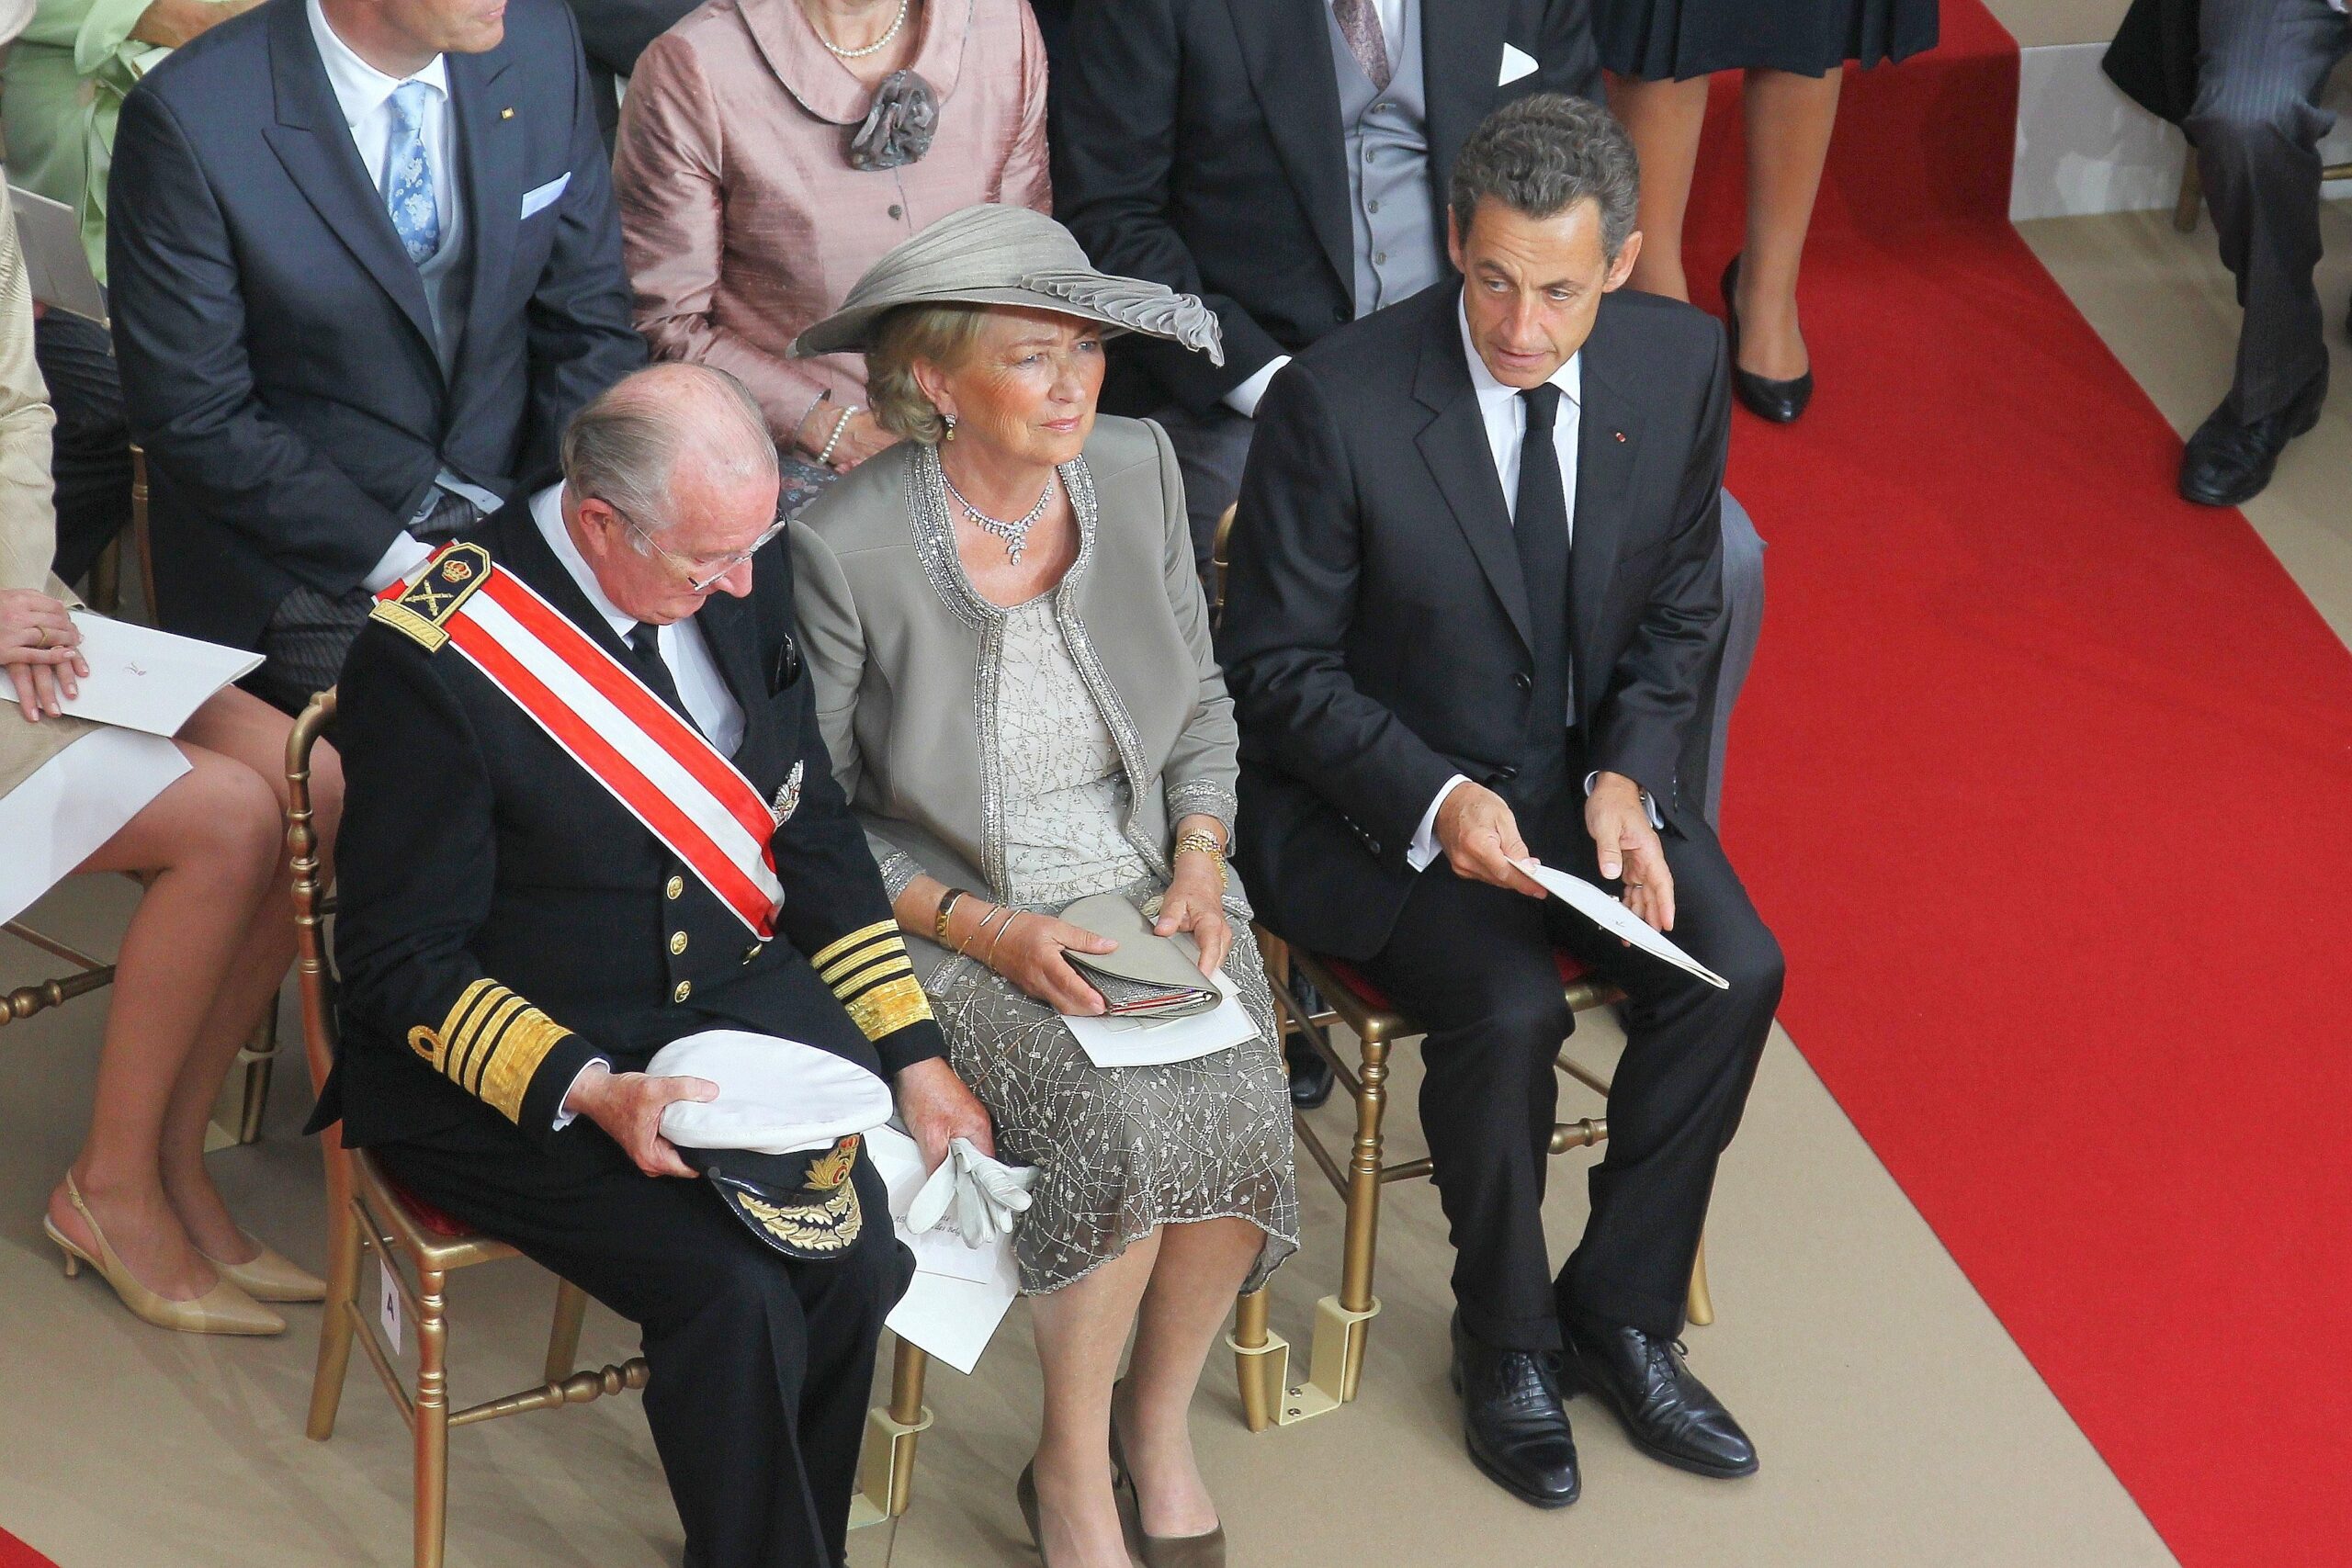 Auch der französische Präsident Nicolas Sarkozy ist eingeladen. Er kam ohne seine schwangere Frau Carla. Hier sitzt er neben dem belgischen König Albert II and Königin Paola.